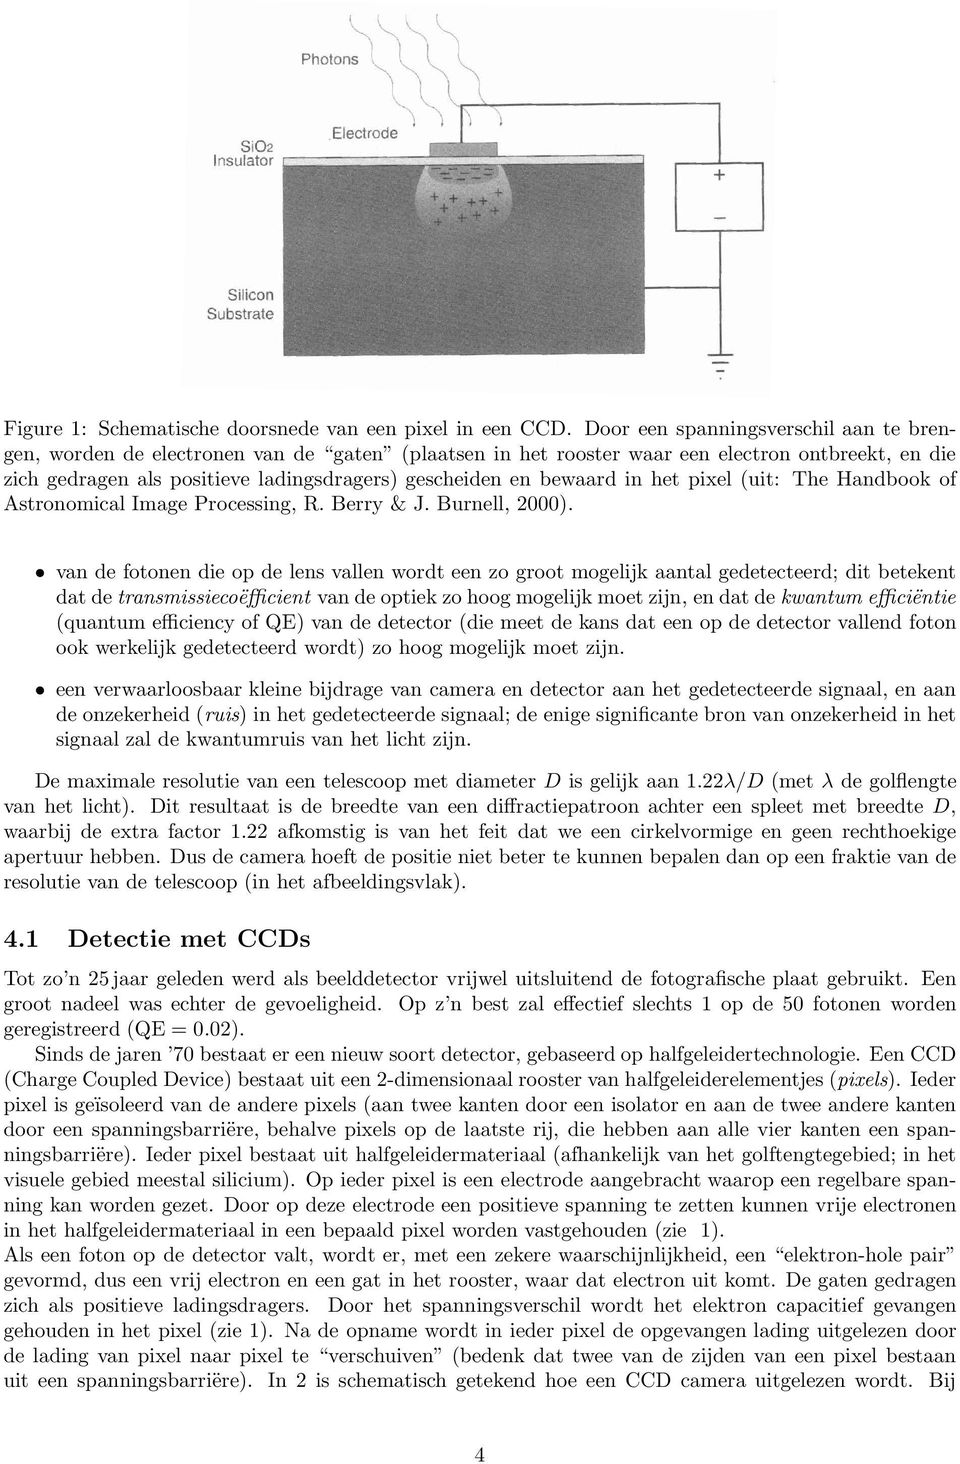 bewaard in het pixel (uit: The Handbook of Astronomical Image Processing, R. Berry & J. Burnell, 2000).